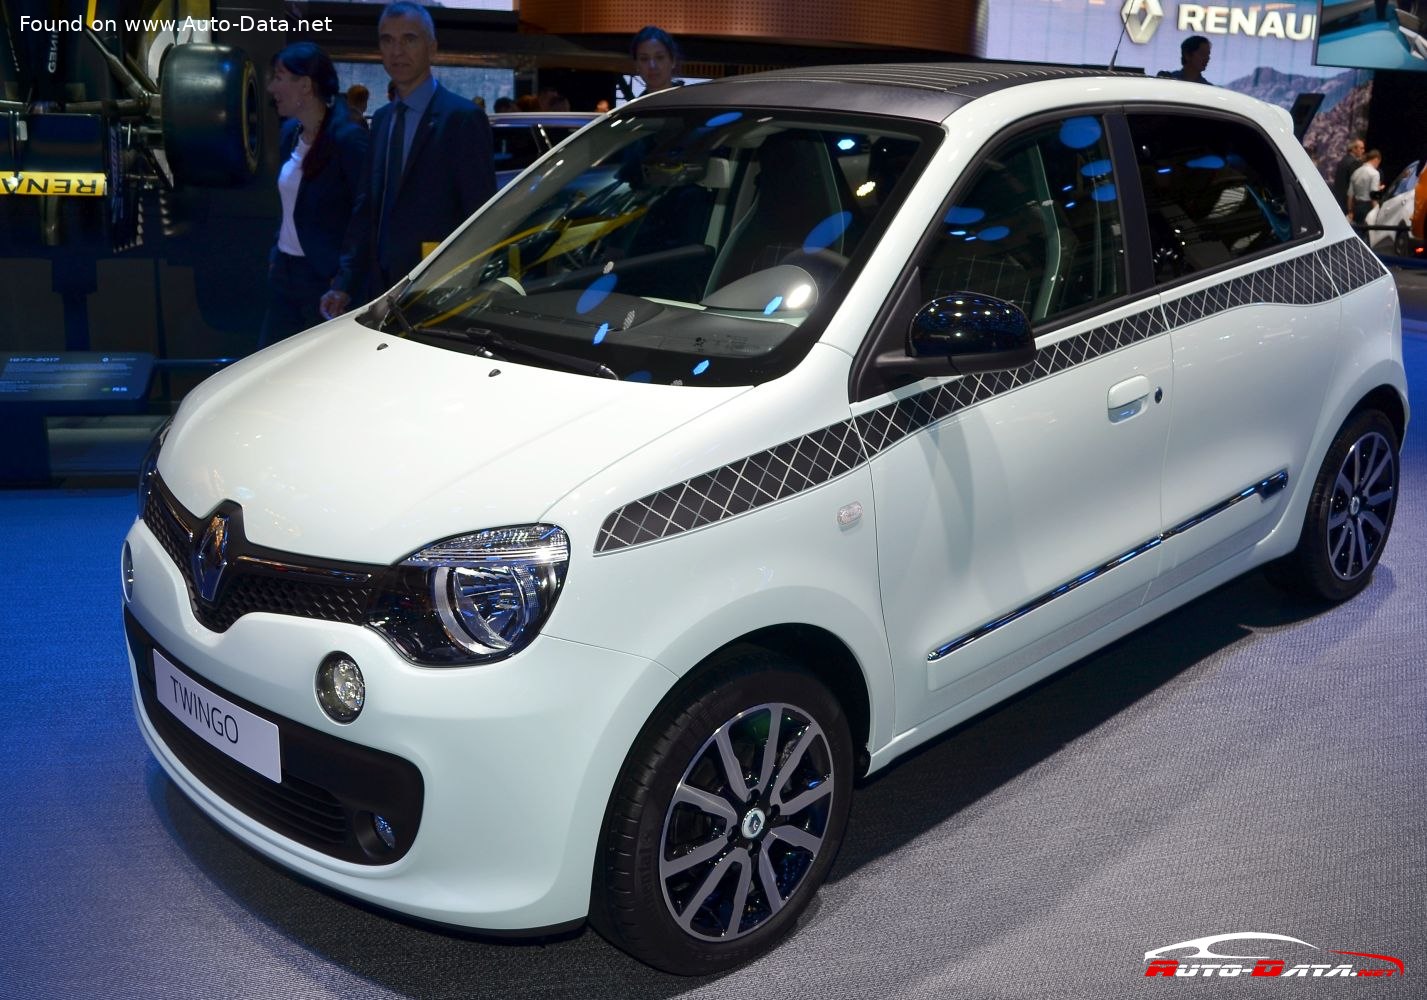 File:Renault twingo 3.jpg - Wikipedia